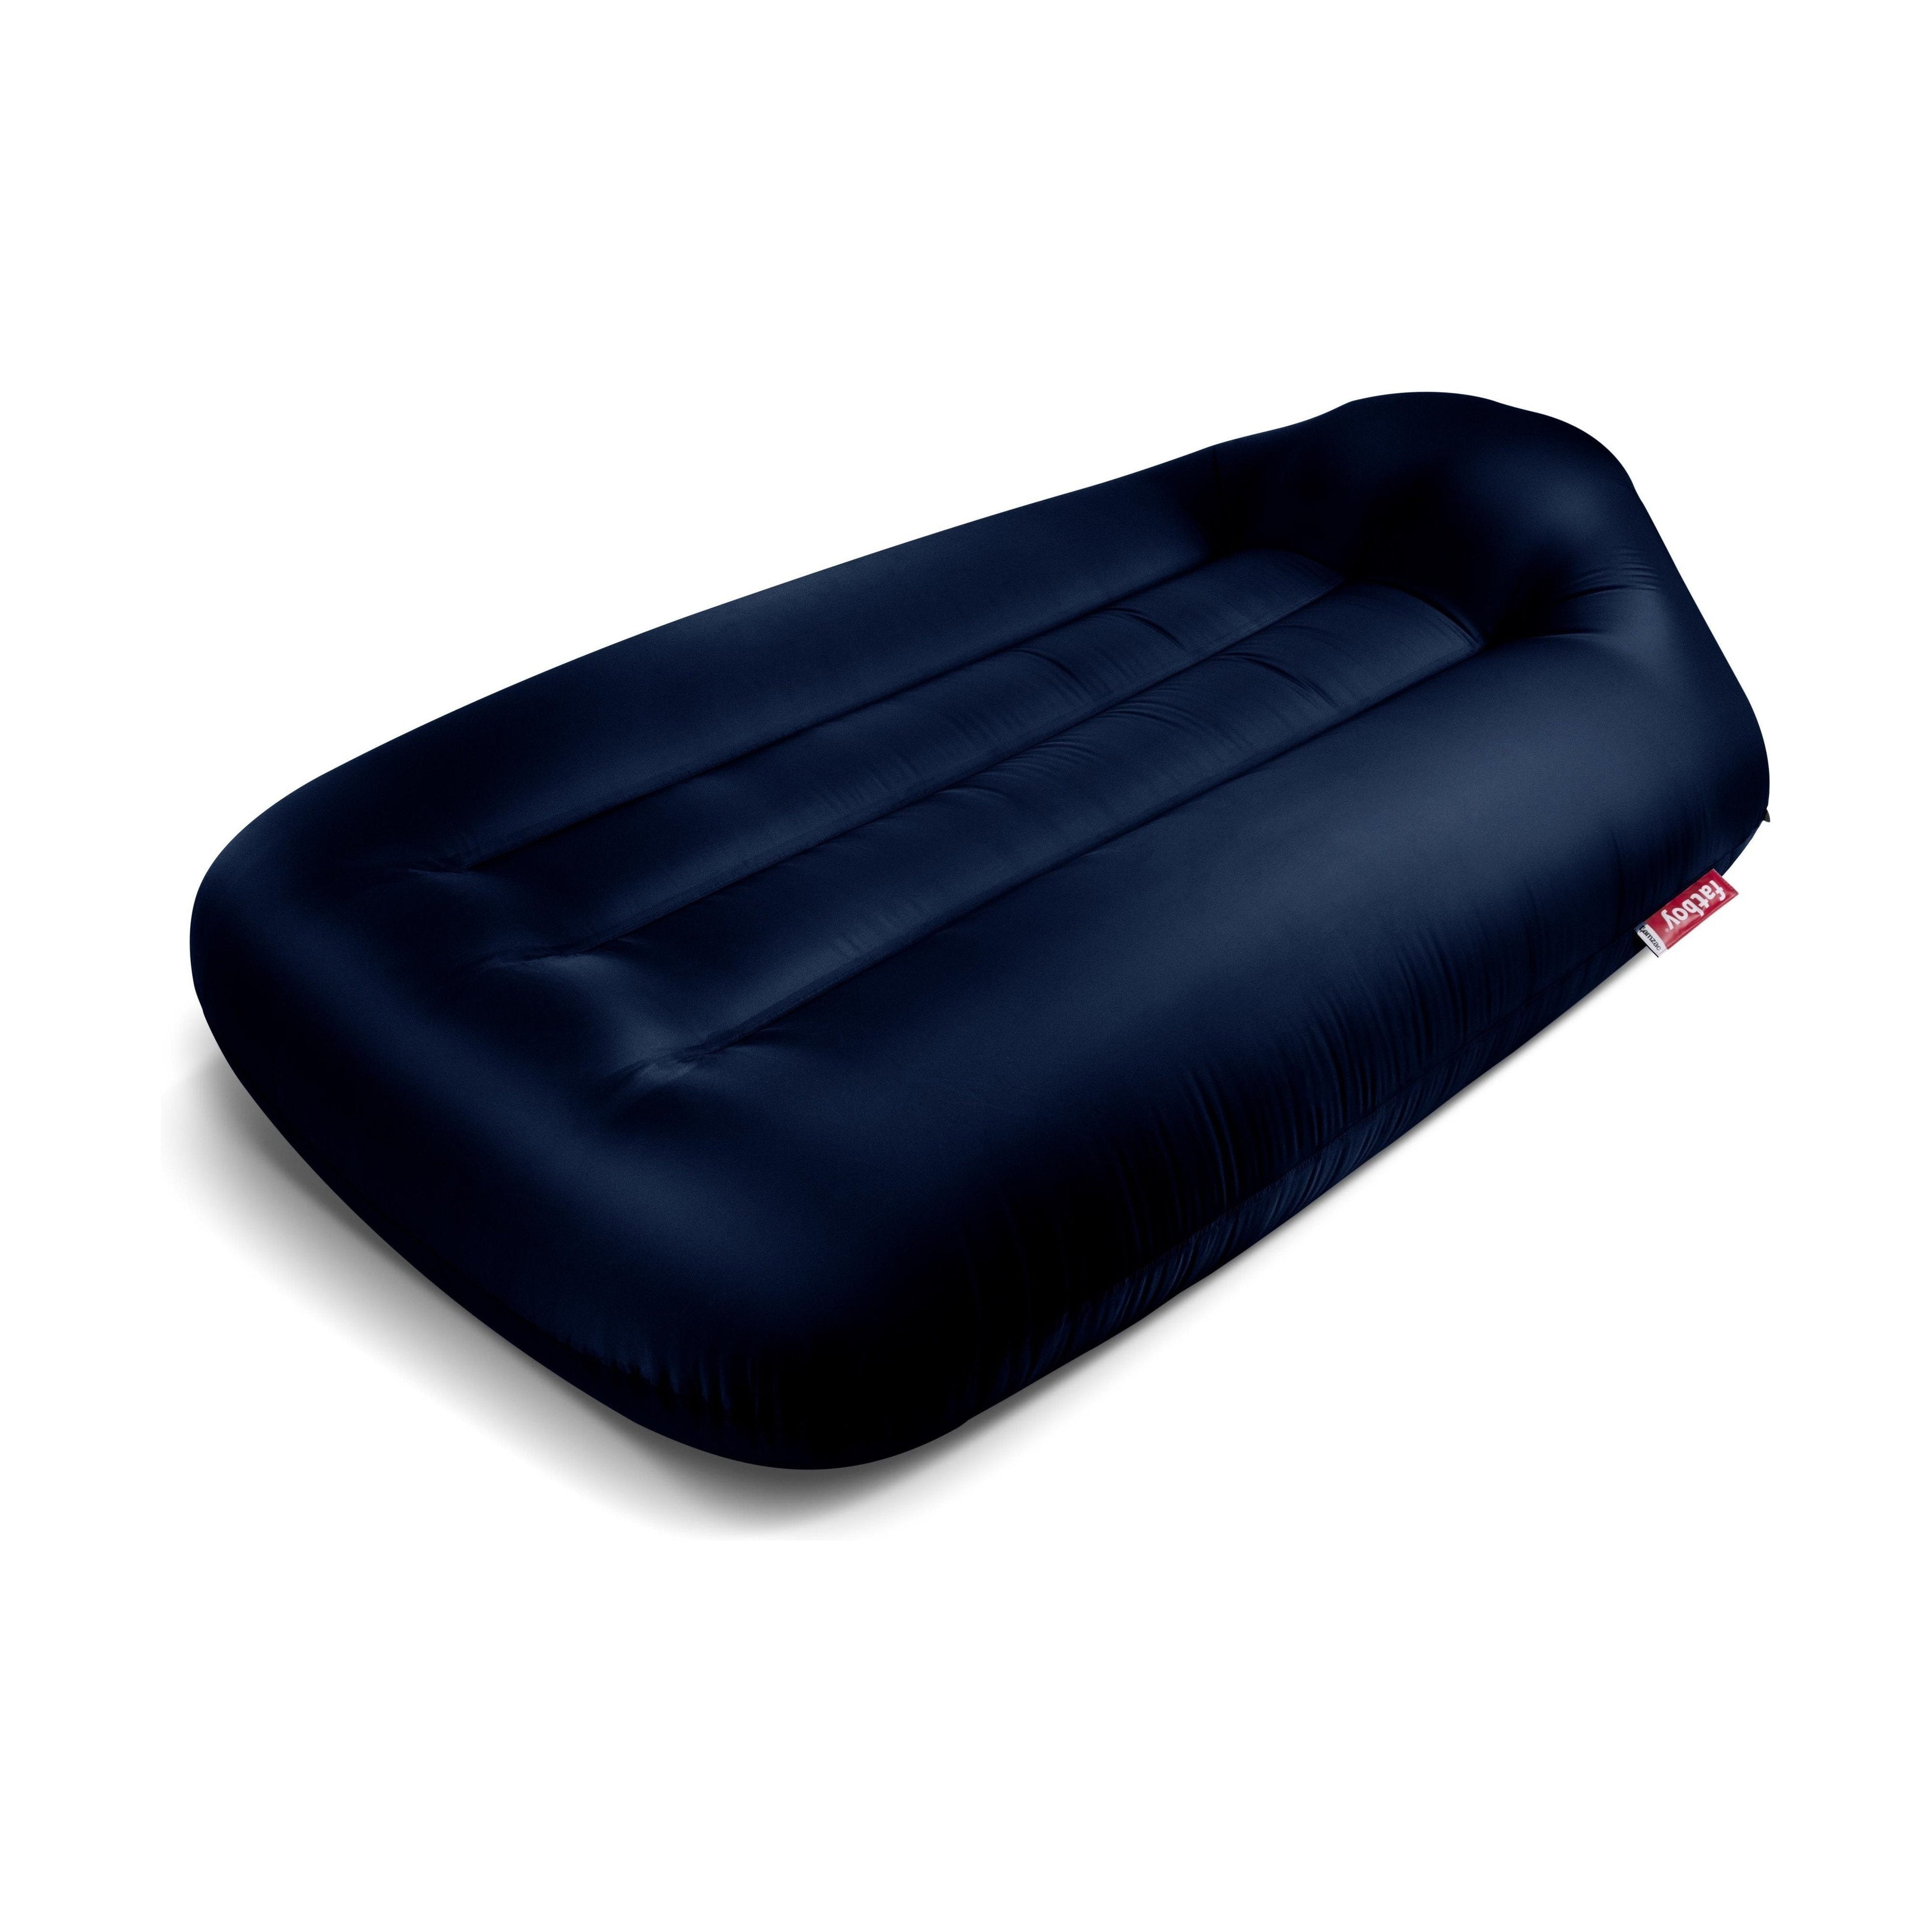 Fatboy Lamzac L divano aria gonfiabile 3.0, blu scuro